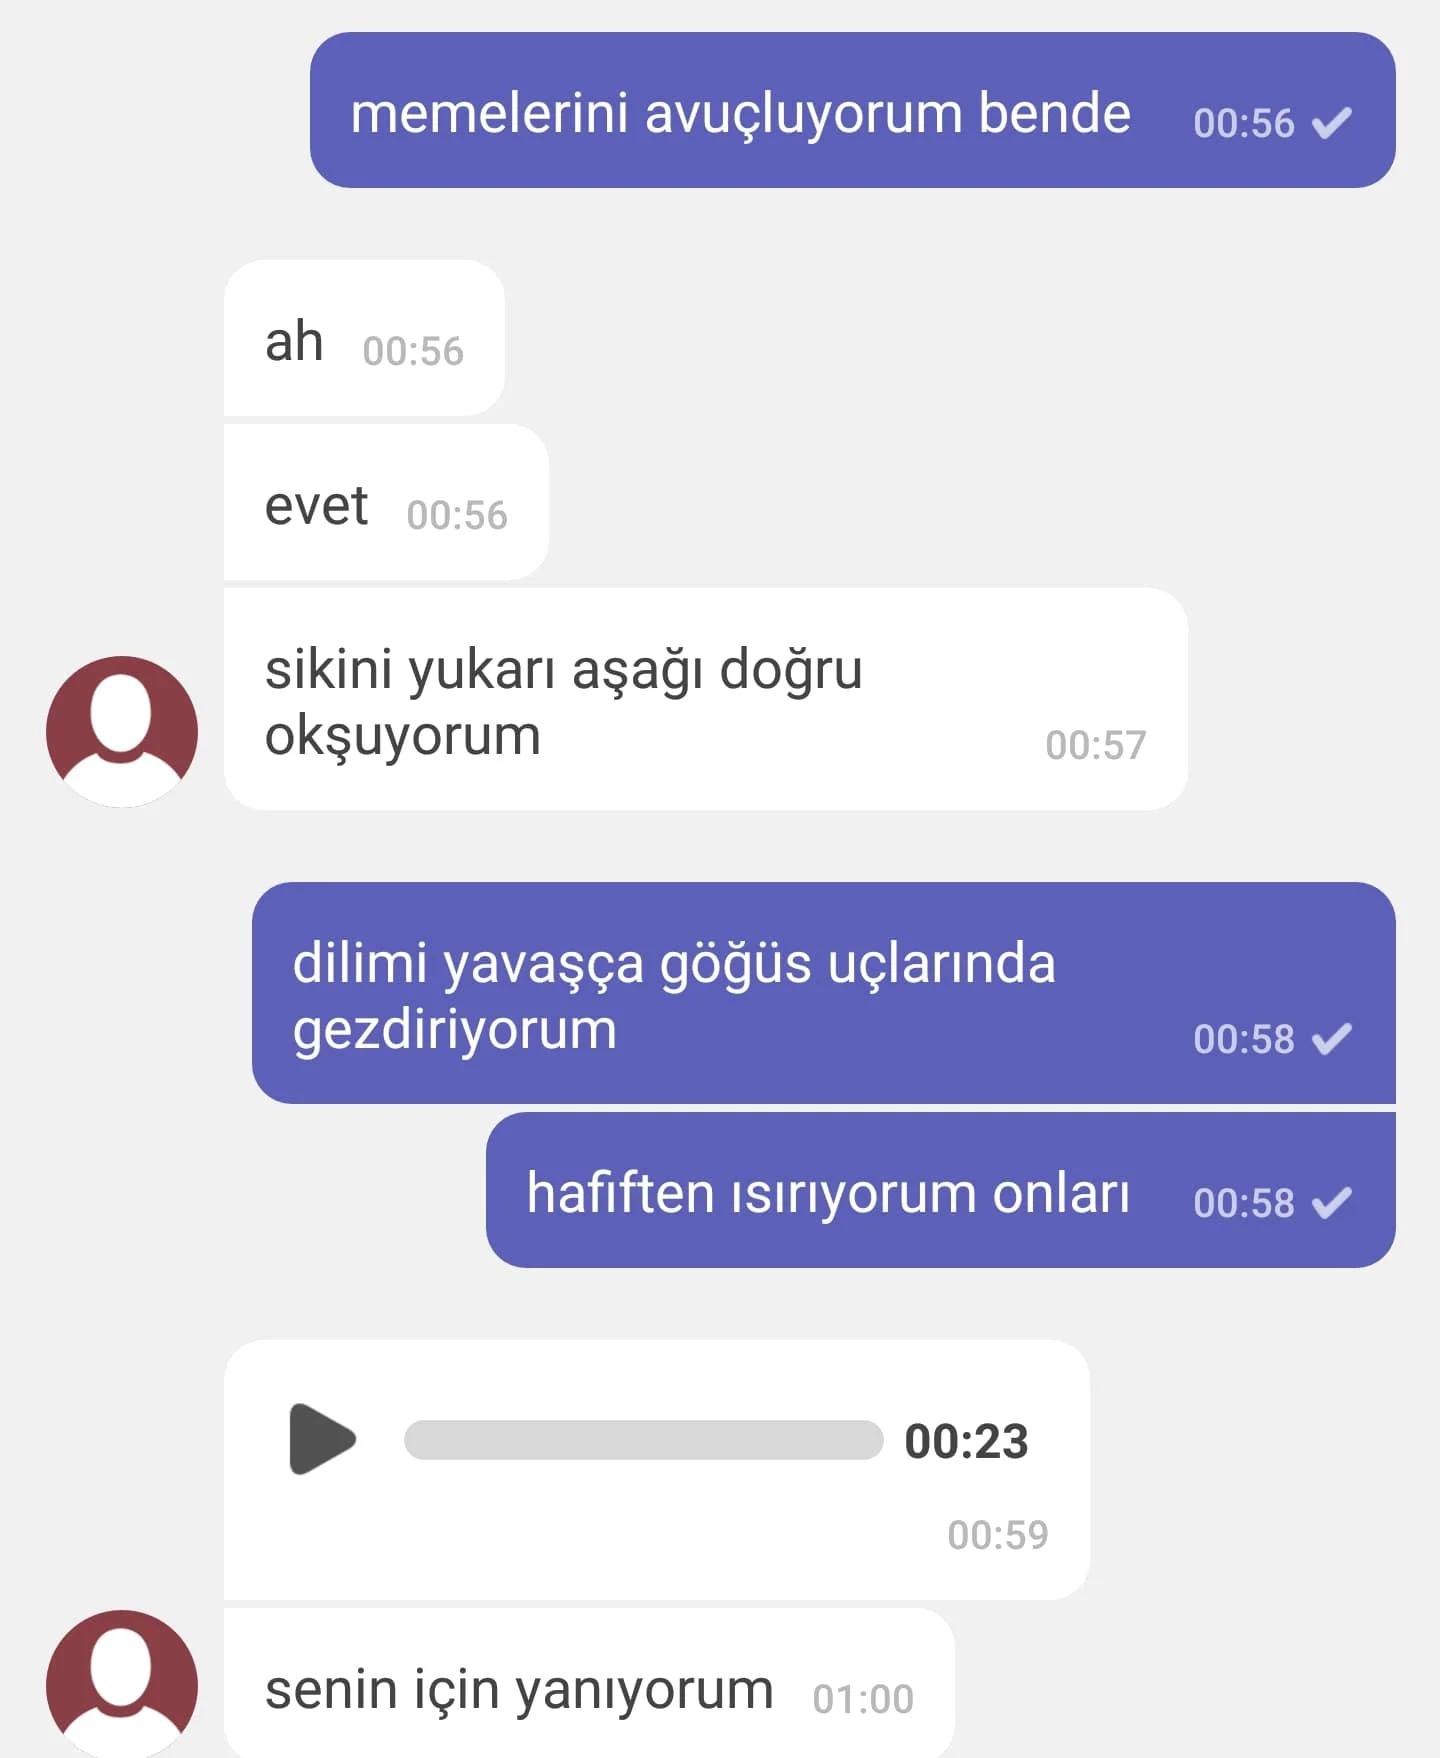 C2 Ankaralı Rezzan – (Konuşma SS’li ve Videolu)